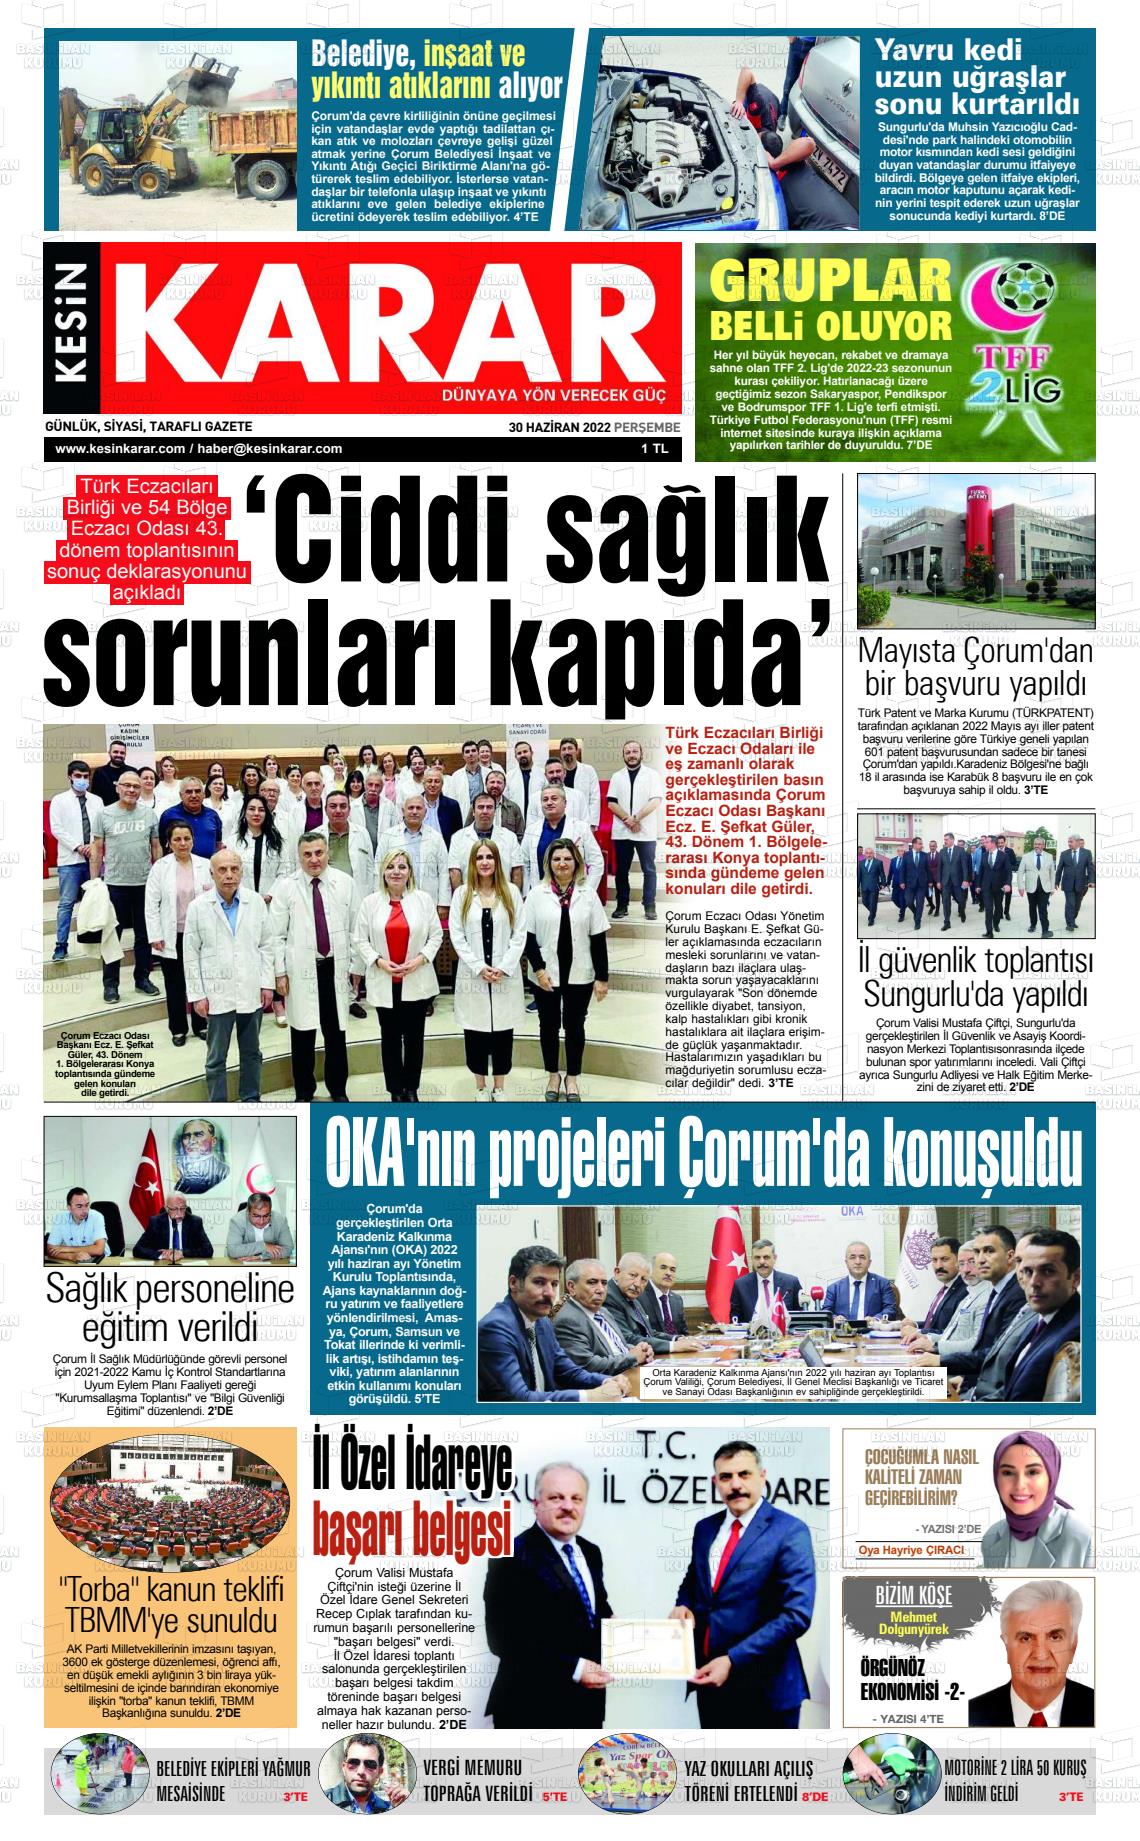 30 Haziran 2022 Kesin Karar Gazete Manşeti